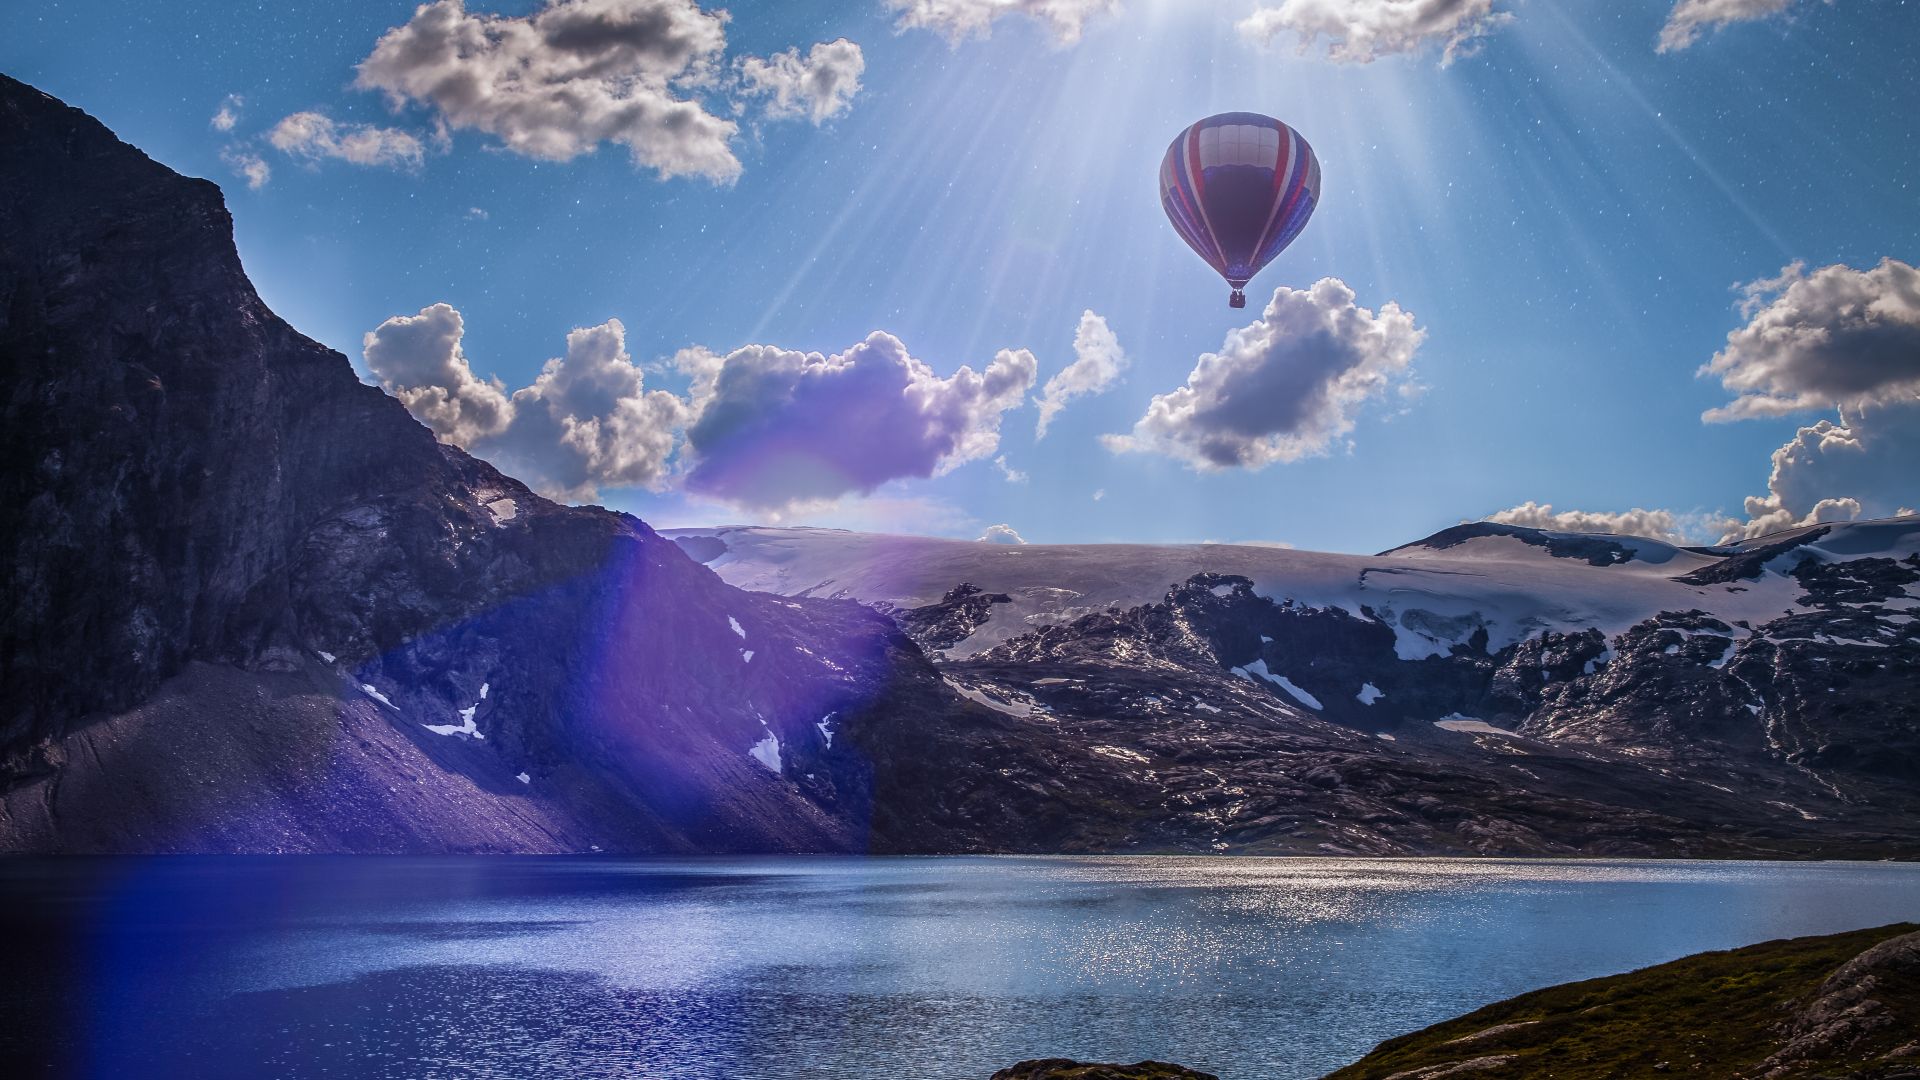 Norway, 4k, 5k wallpaper, 8k, balloon, lake, mountains, clouds (horizontal)